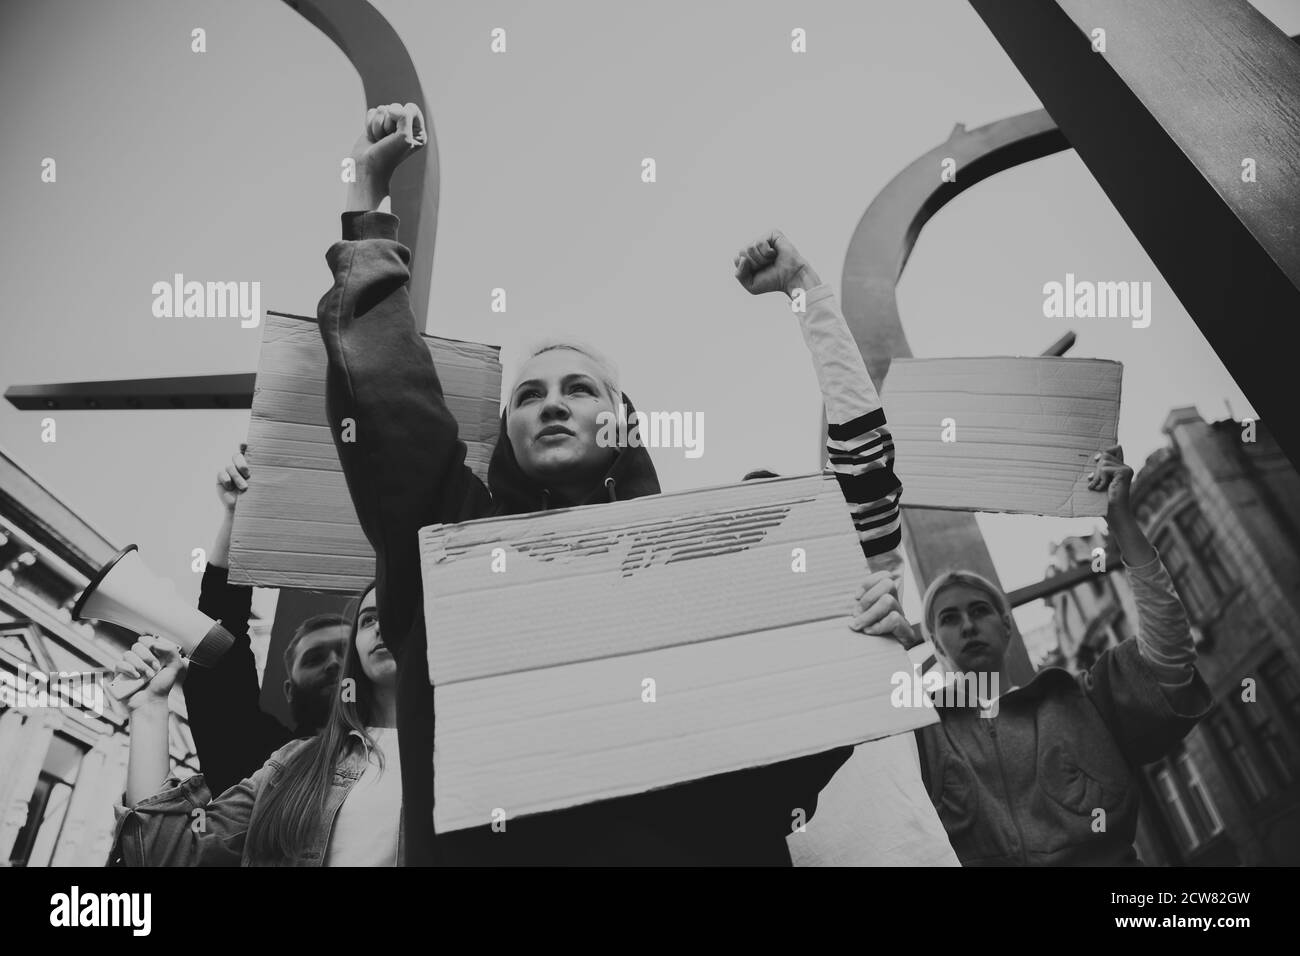 Schwarz und Weiß. Gruppe von Aktivisten, die Slogans in einer Kundgebung geben. Kaukasische Männer und Frauen marschieren zusammen in einem Protest in der Stadt. Schauen Sie wütend, hoffnungsvoll, zuversichtlich. Leere Banner für Ihr Design oder Ihre Anzeige. Stockfoto